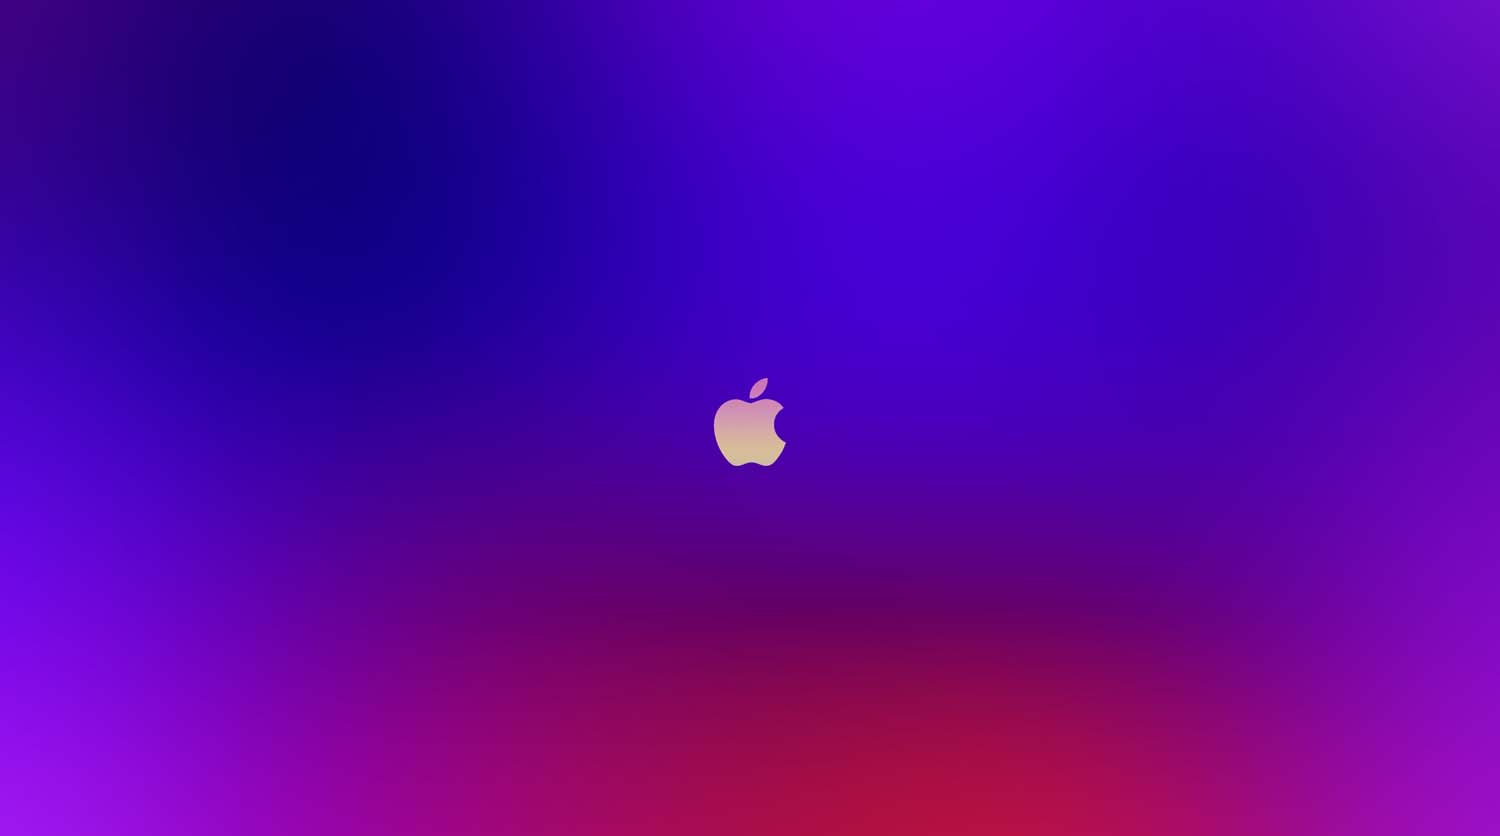 iCloud Blue Purble, Apple logo, Computers, Mac, sky